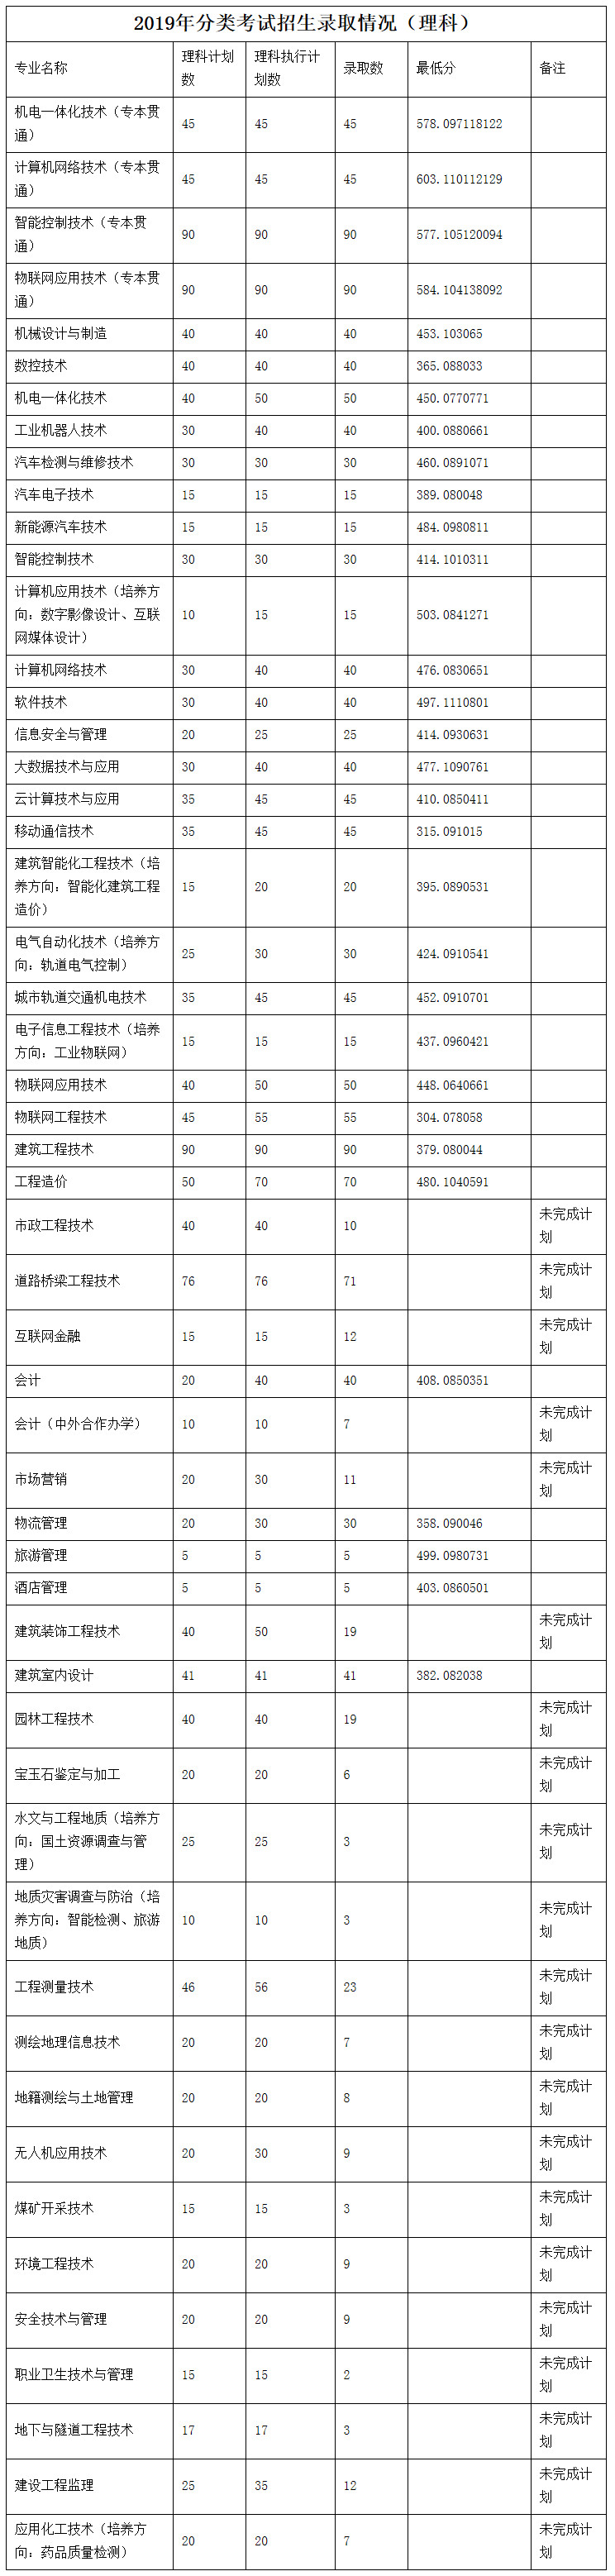 重庆工程职业技术学院2019年分类考试招生录取情况（理科）.jpg